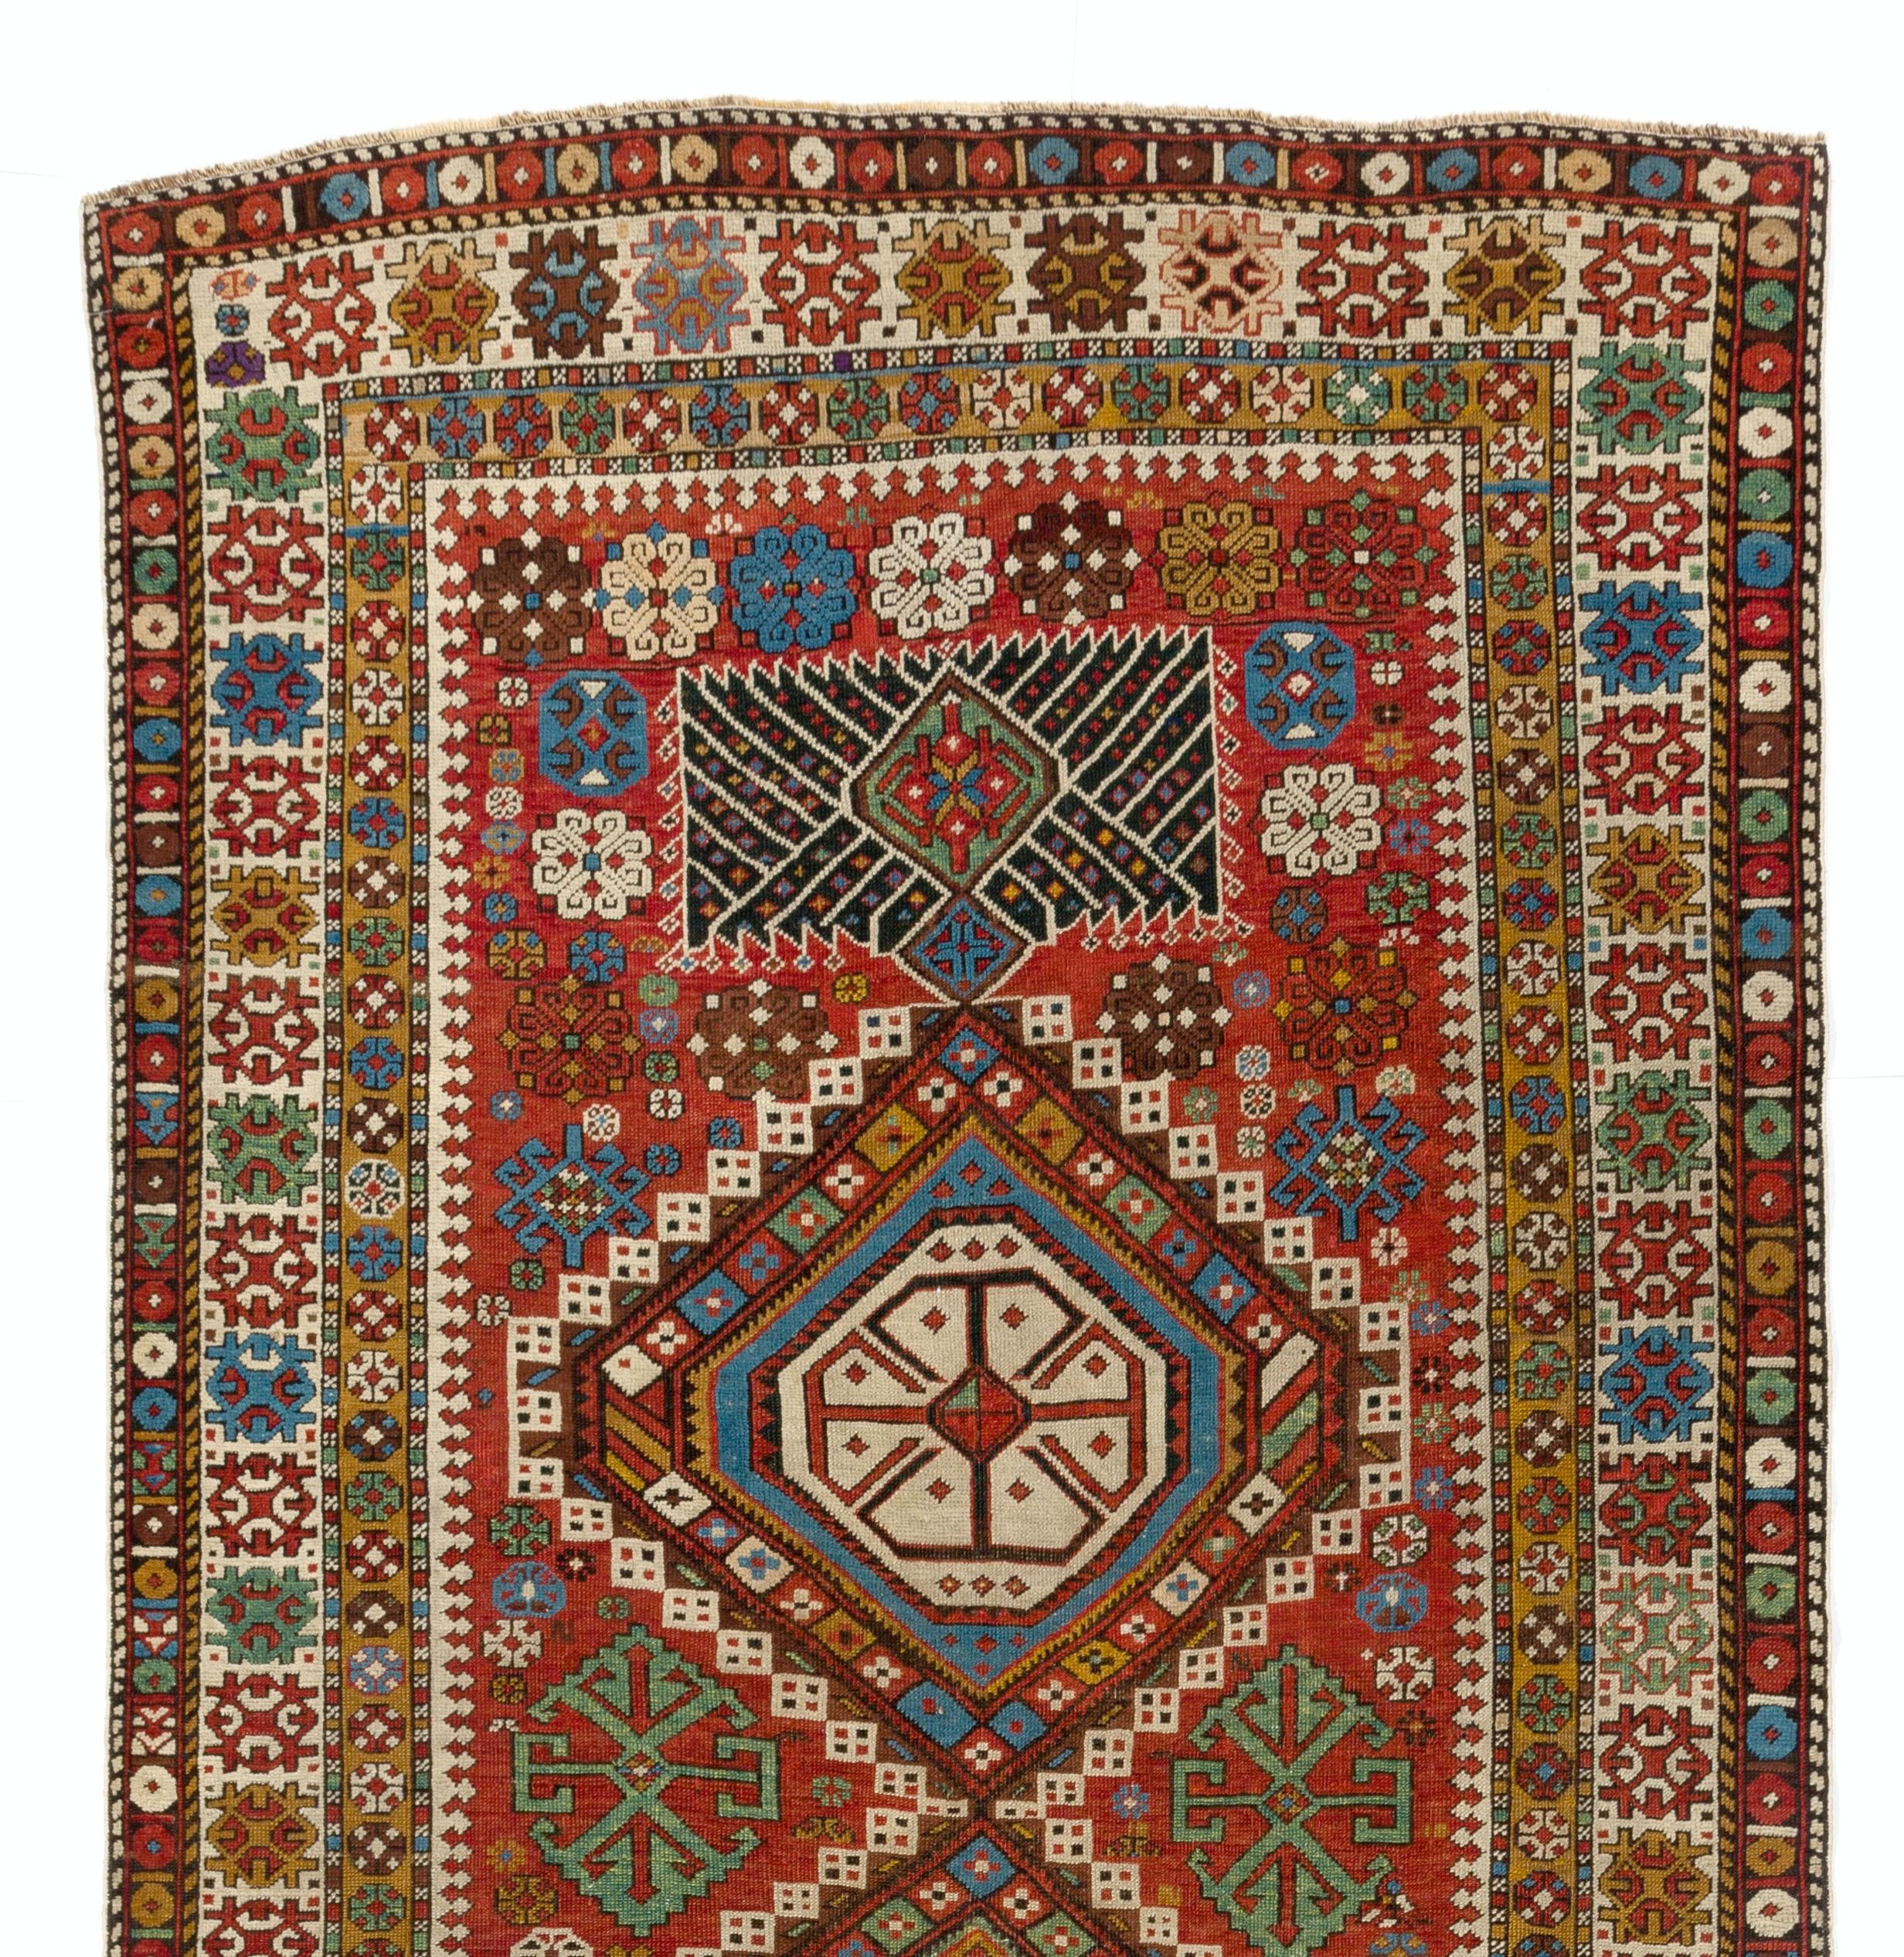 Ancien tapis caucasien de Shirvan, vers 1875. 
Le tapis a des poils de laine moyens sur une base de laine. Il est en très bon état et a été nettoyé par des professionnels.